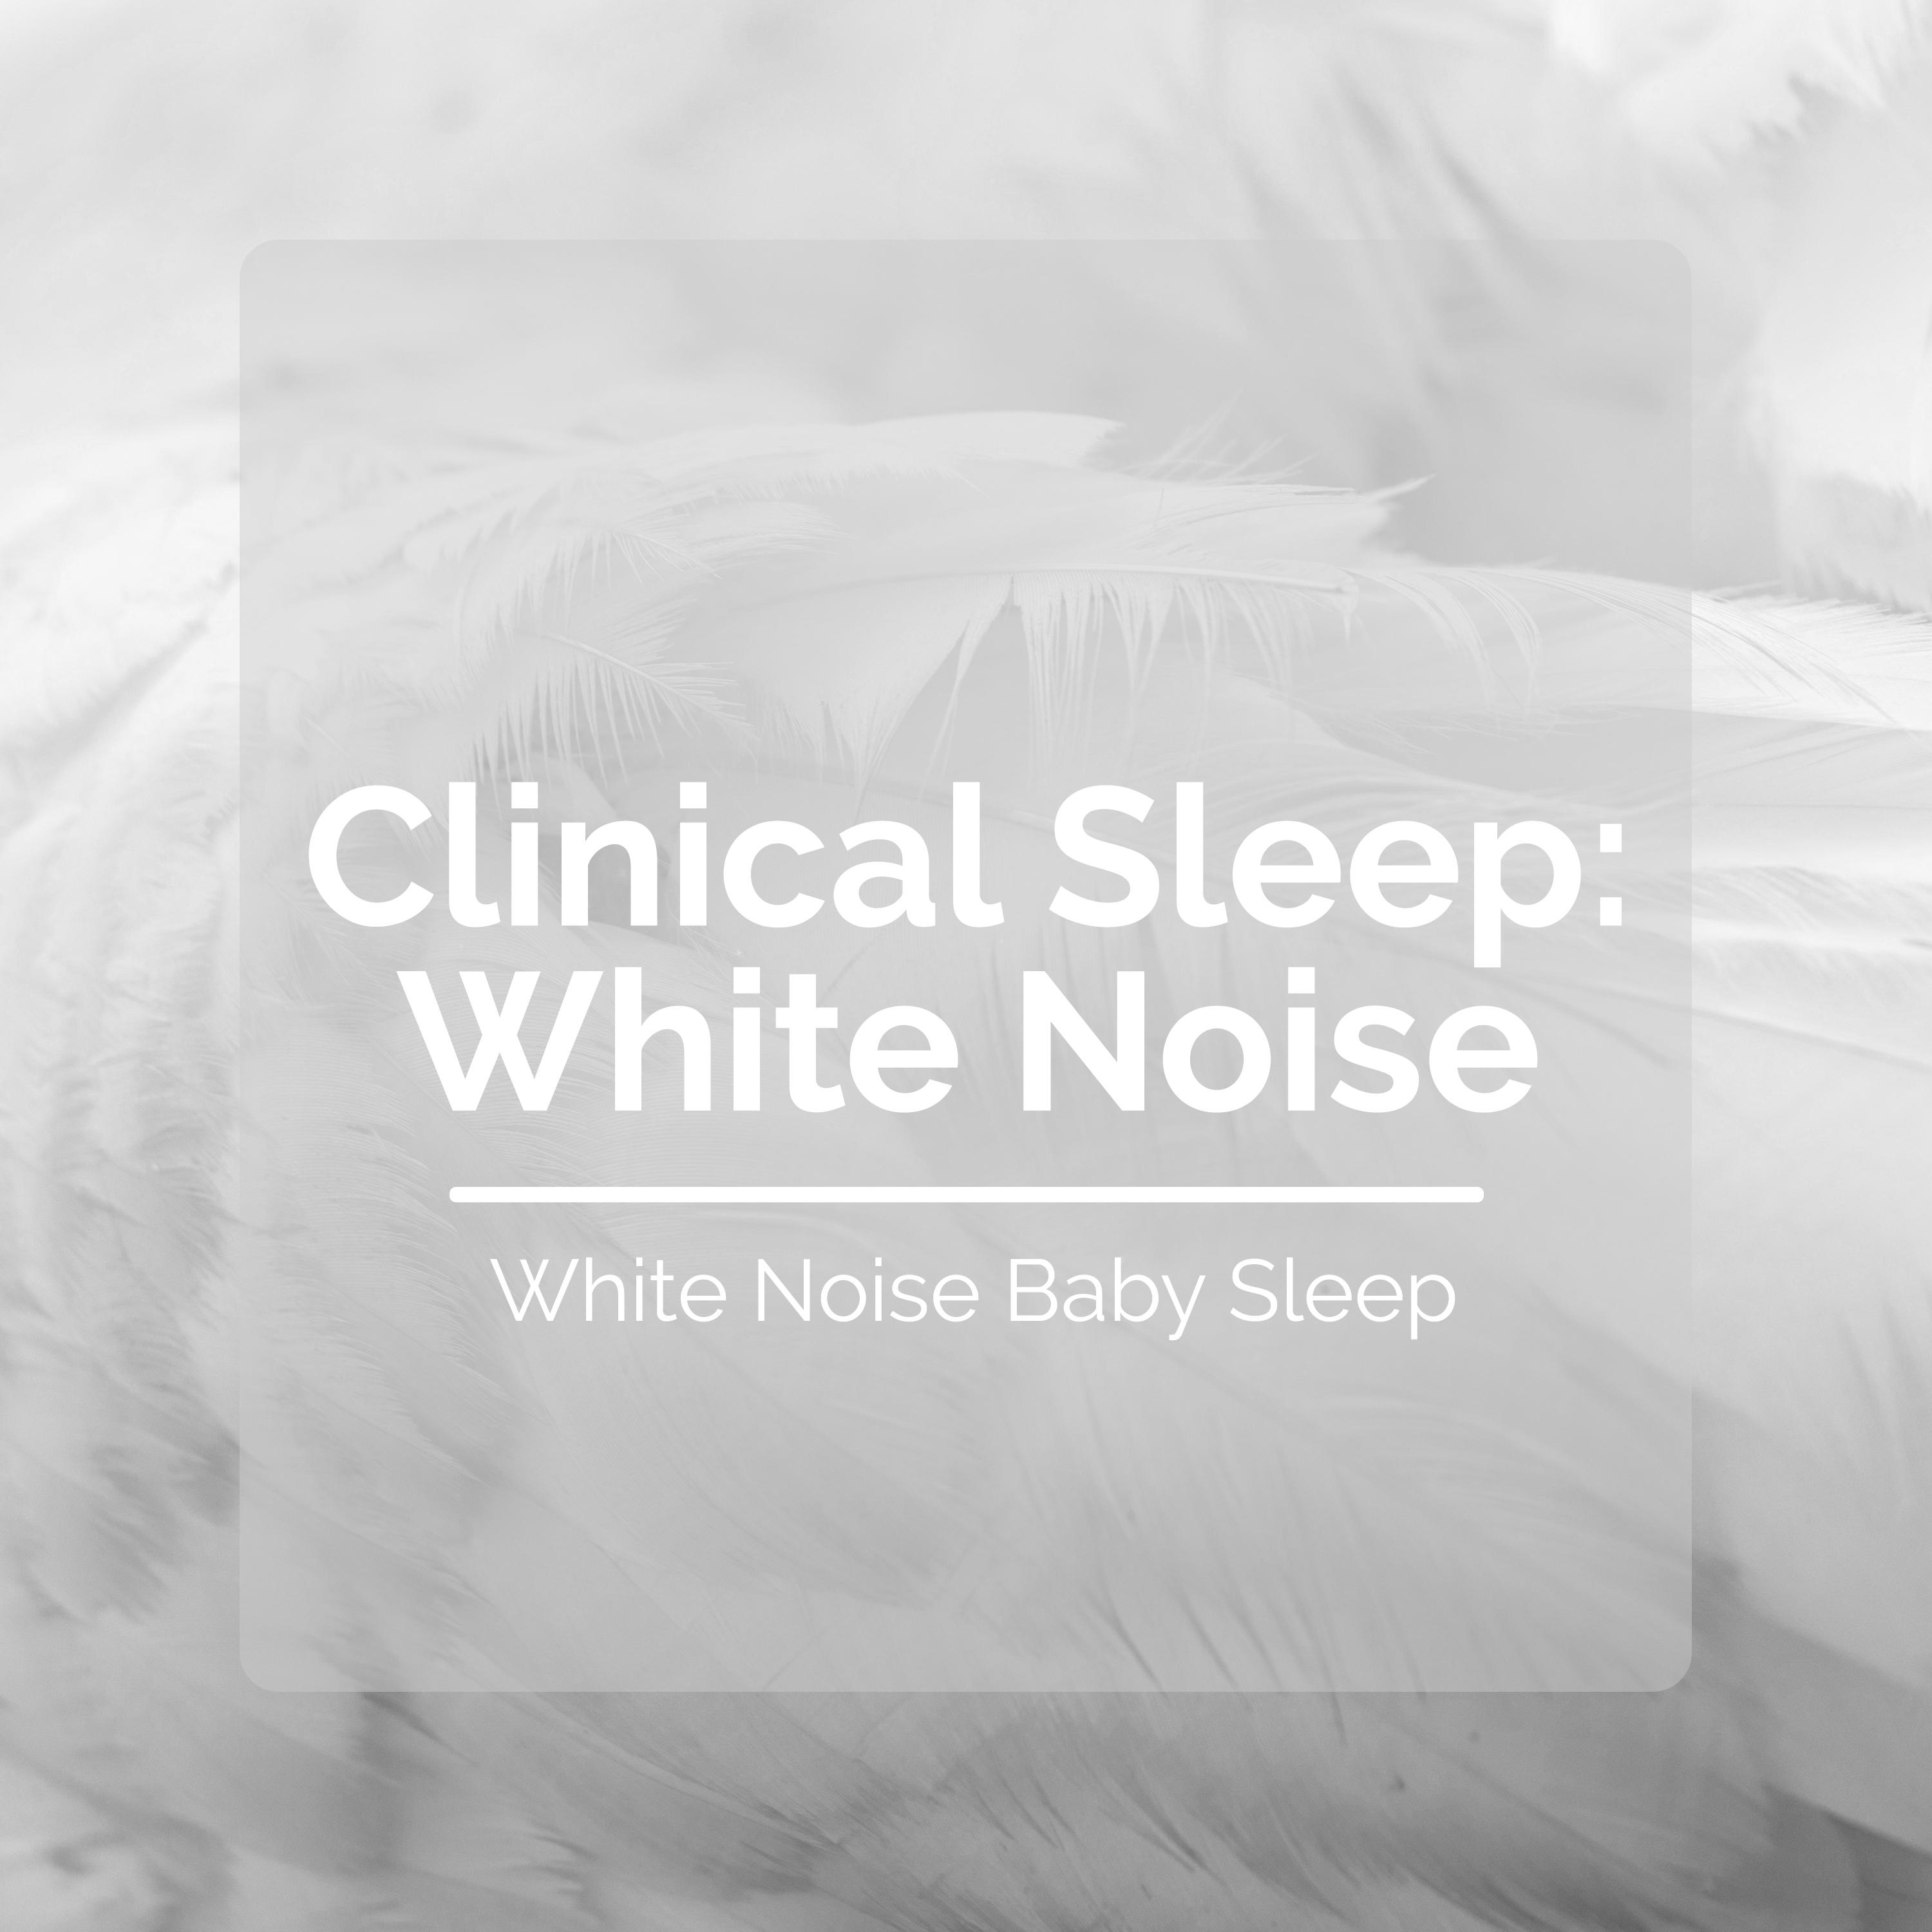 Clinical Sleep: White Noise